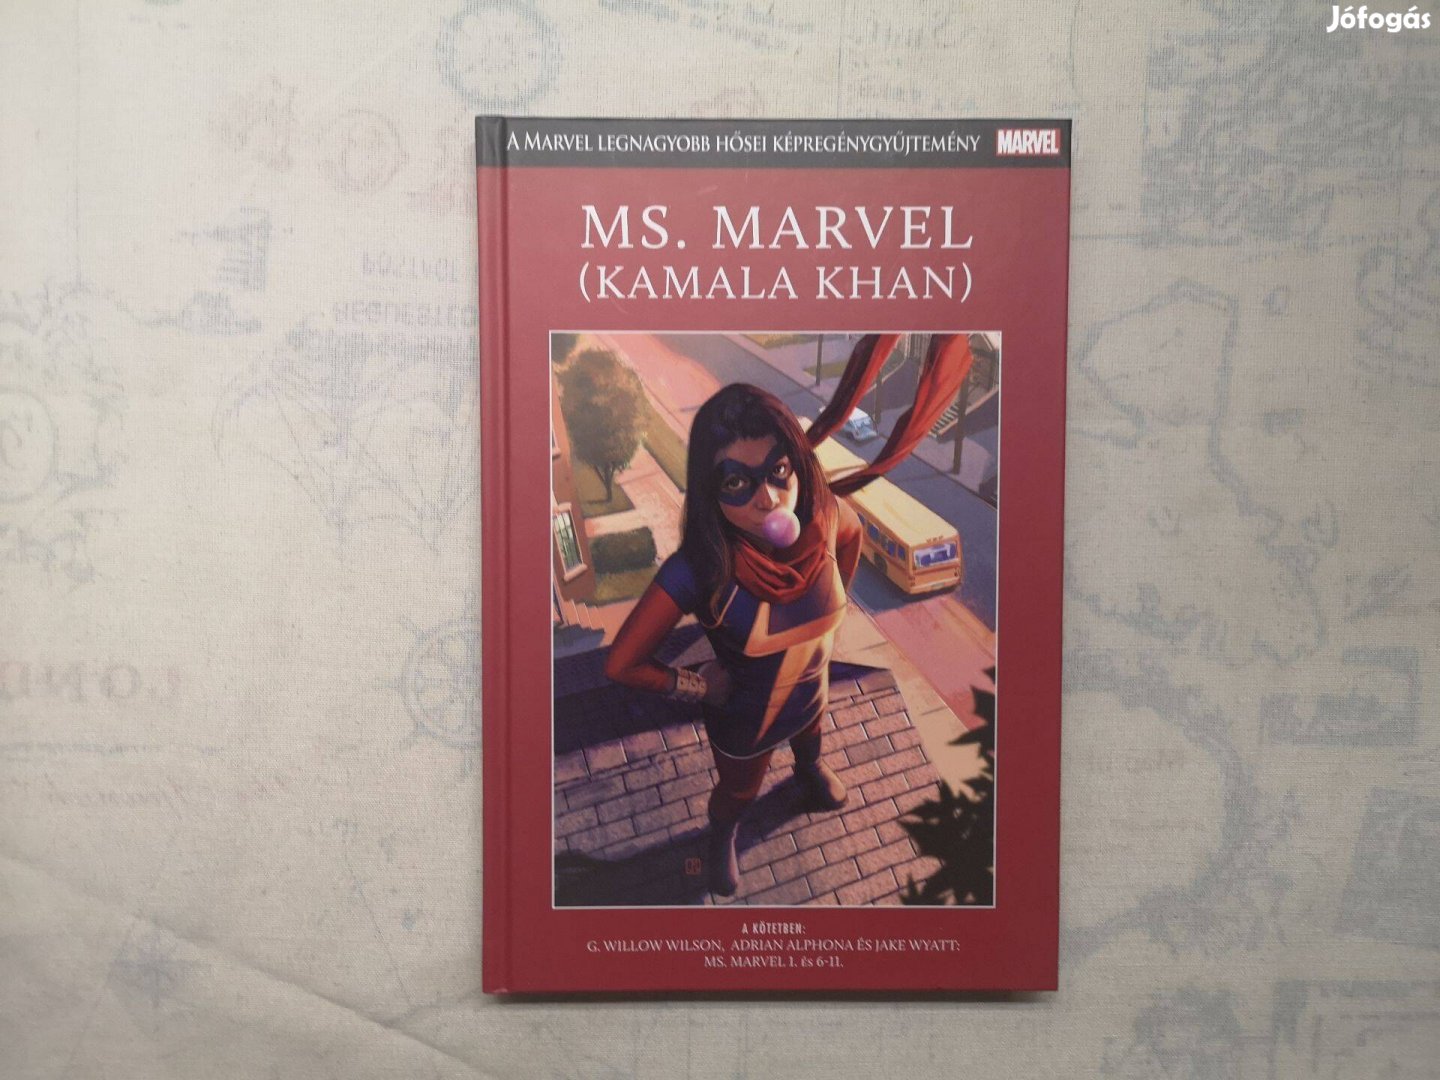 A Marvel legnagyobb hősei képregénygyűjtemény 9. - Ms. Marvel